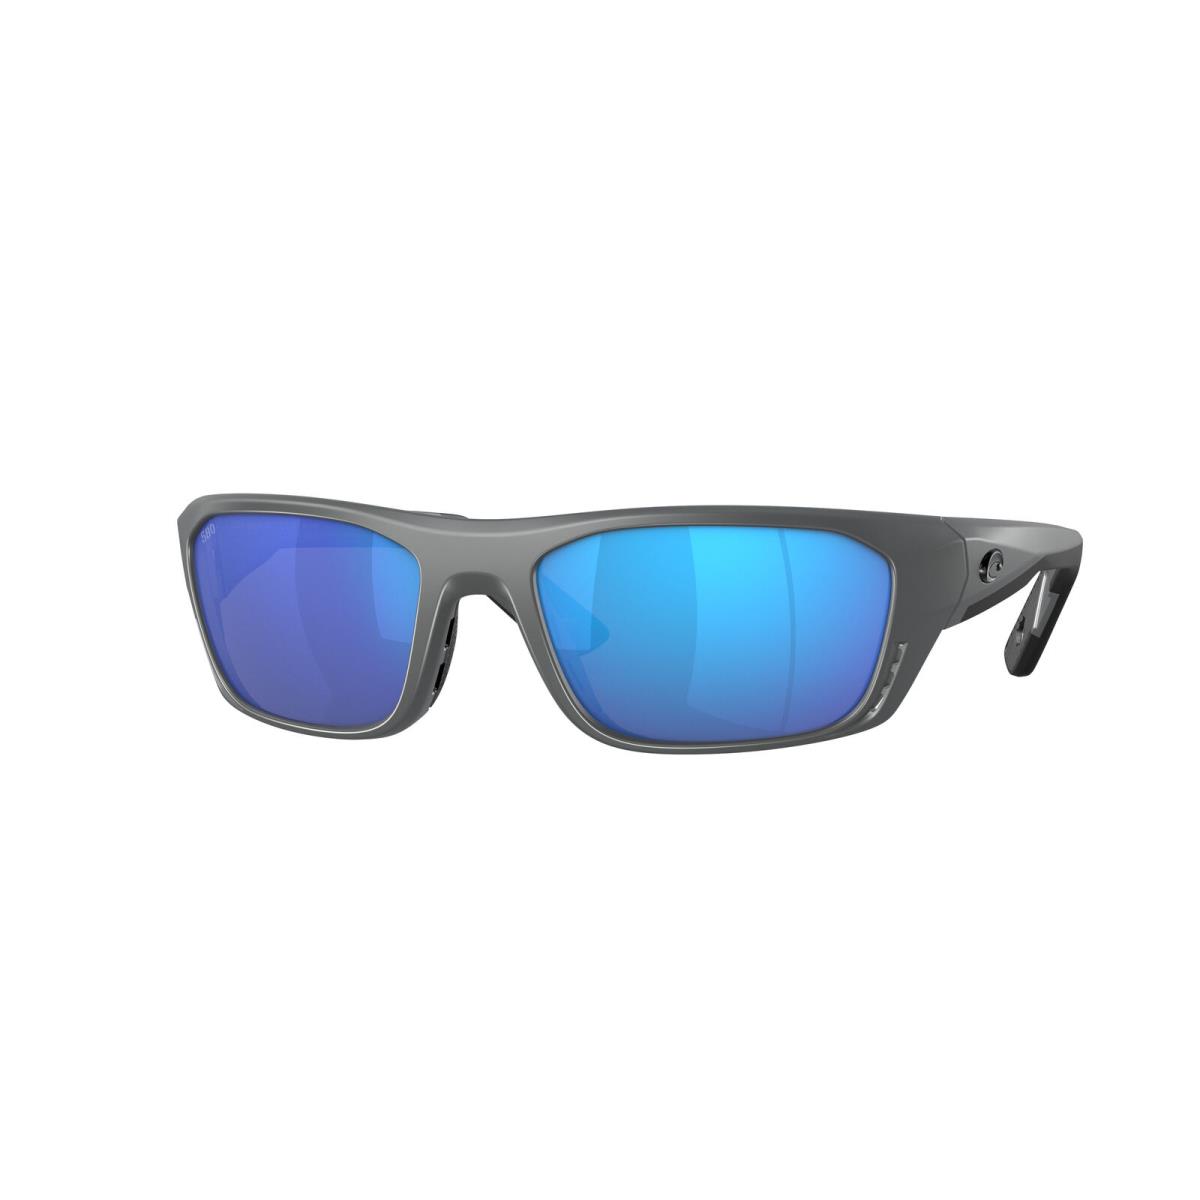 Costa Del Mar 06S 9115 Whitetip Pro Matte Gray Blue m 911507 Sunglasses